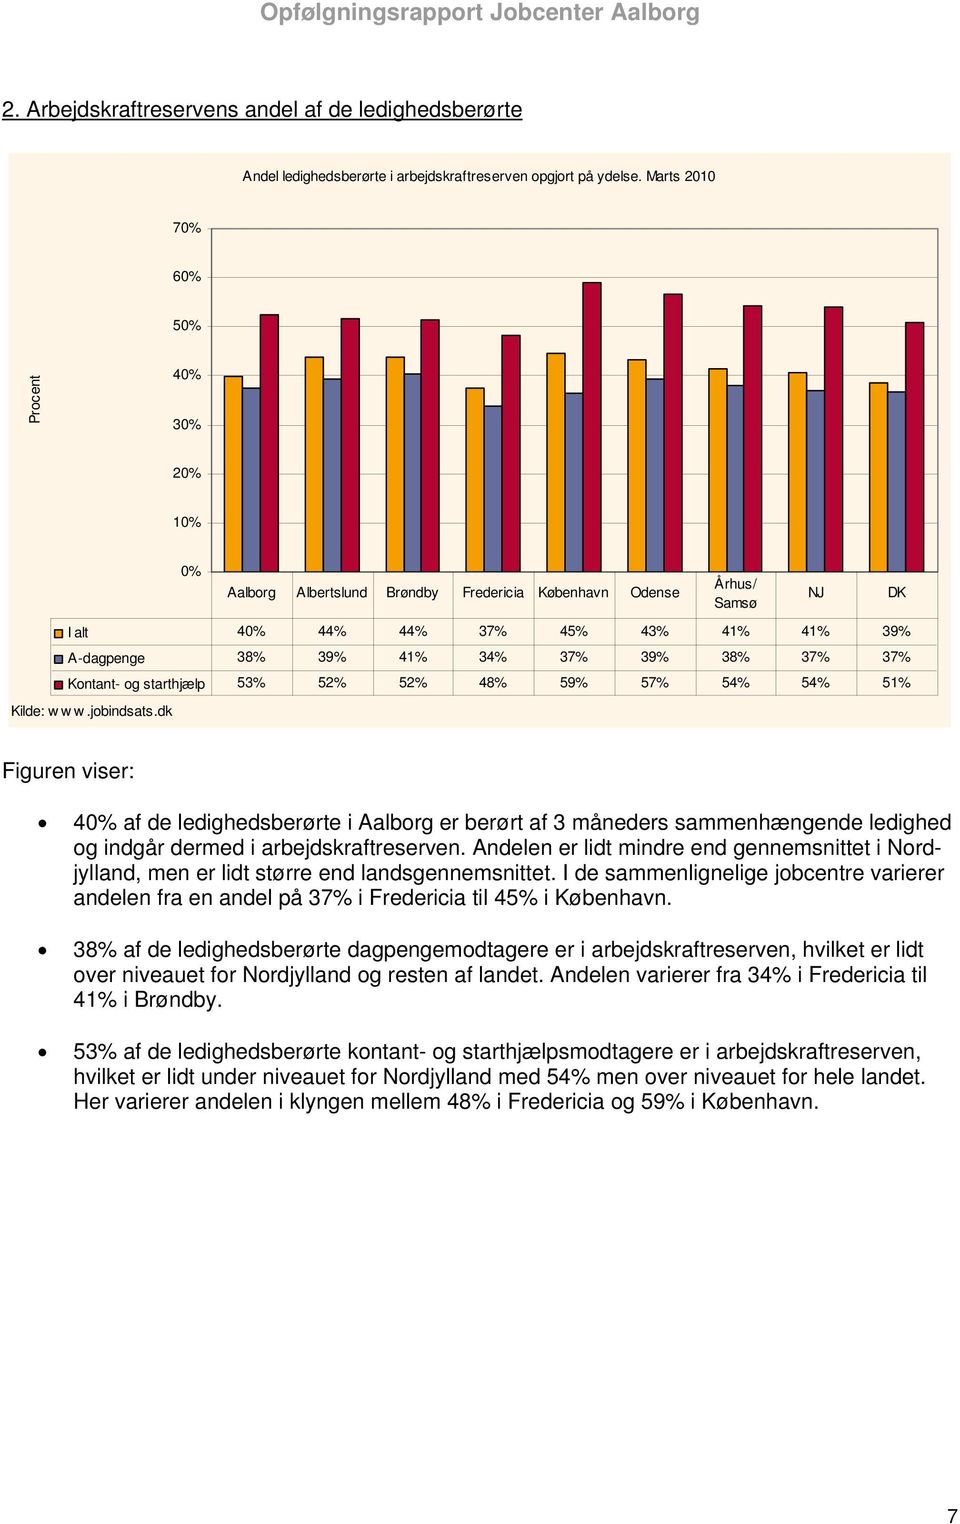 48% 59% 57% 54% 54% 51% NJ DK 40% af de ledighedsberørte i Aalborg er berørt af 3 måneders sammenhængende ledighed og indgår dermed i arbejdskraftreserven.